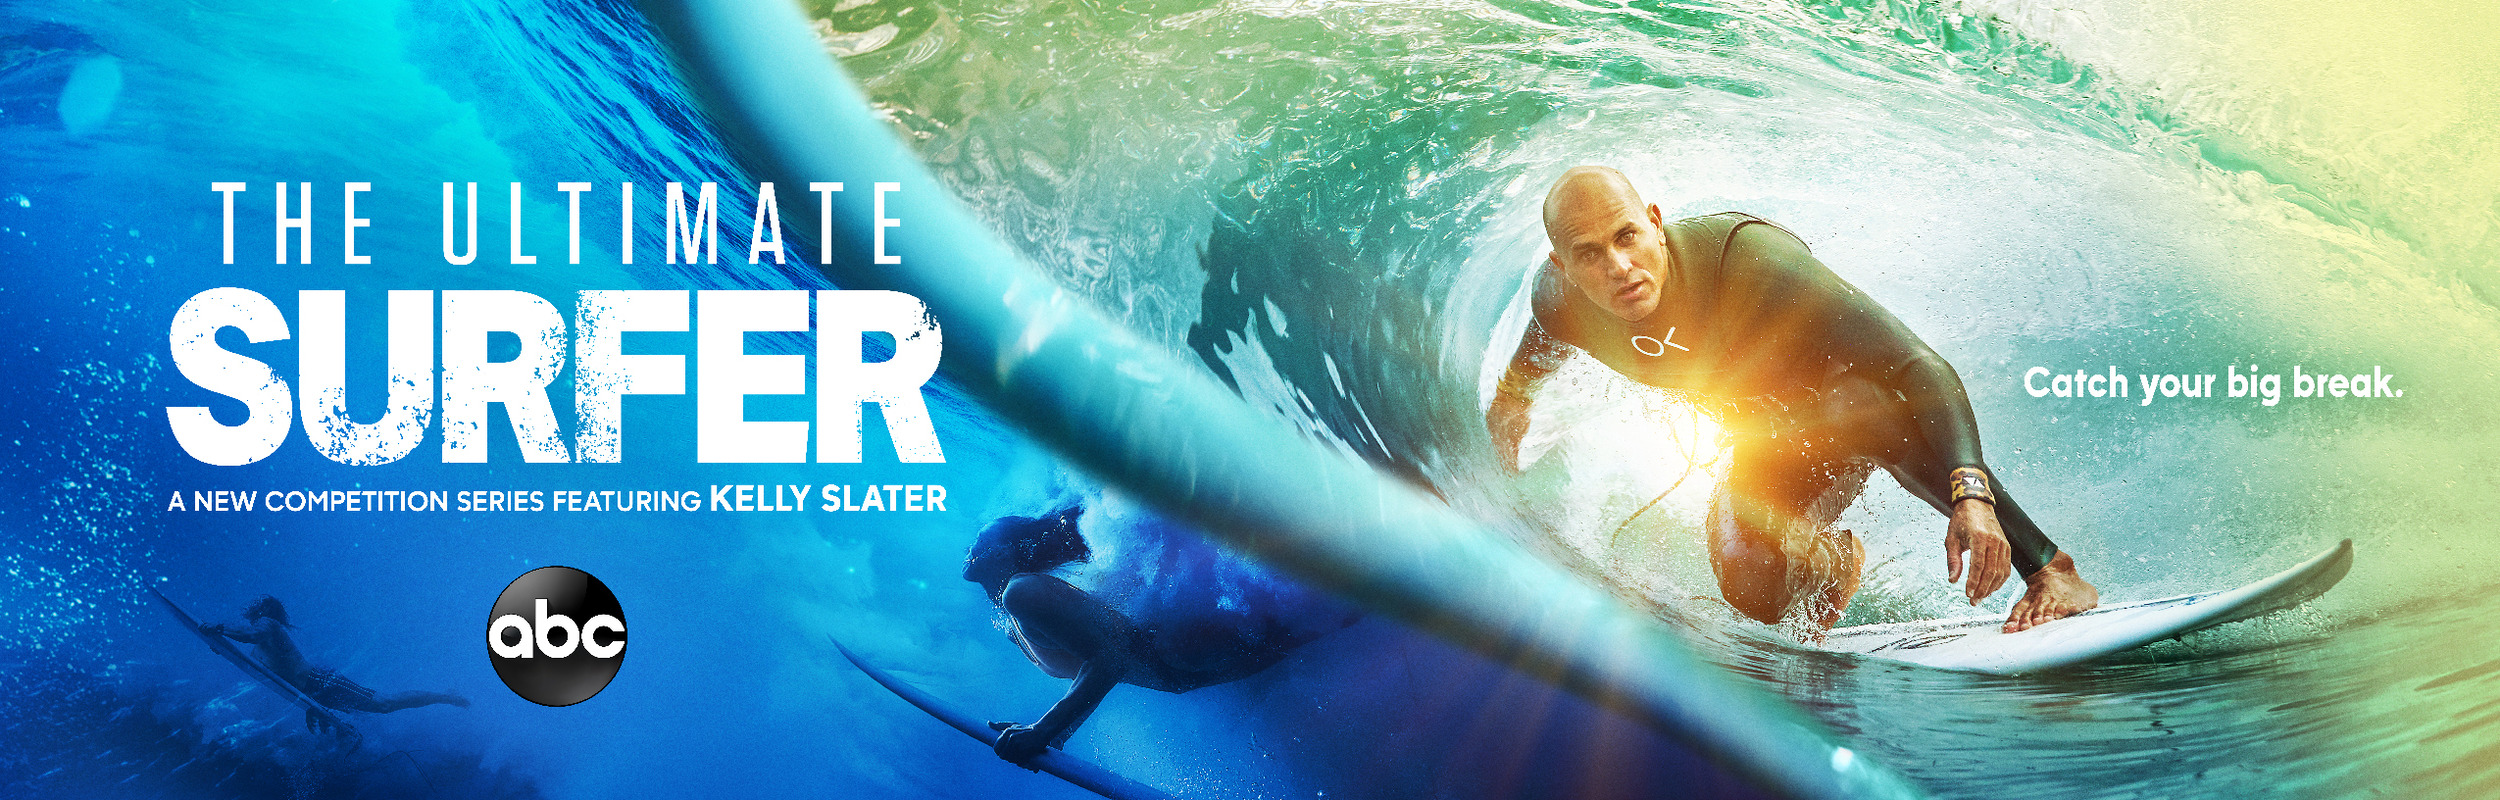 Mega Sized TV Poster Image for Ultimate Surfer (#2 of 2)